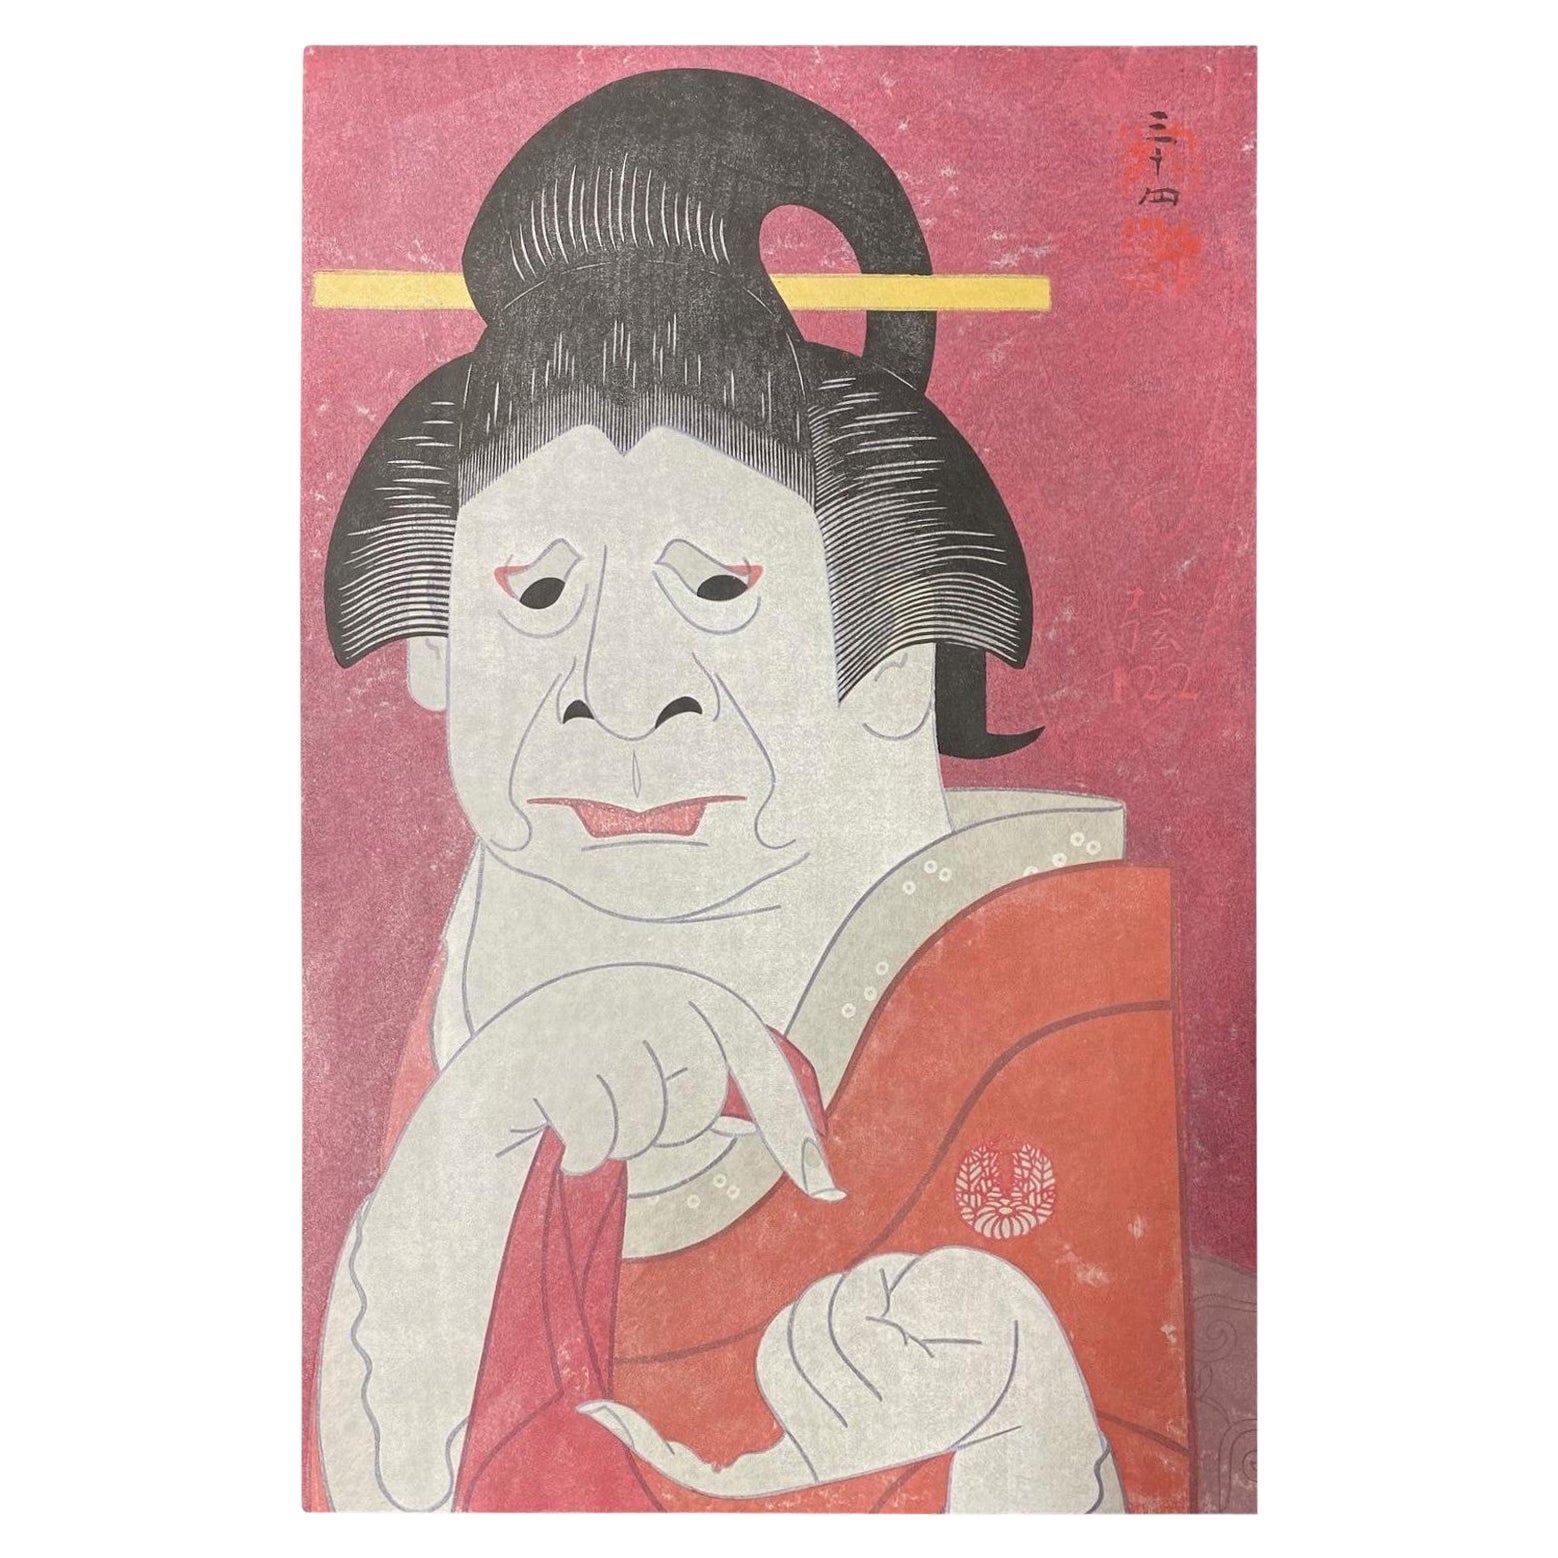 Tsuruya Kokei: Japanischer Holzschnitt in limitierter Auflage, signiert Onoe Baiko VII